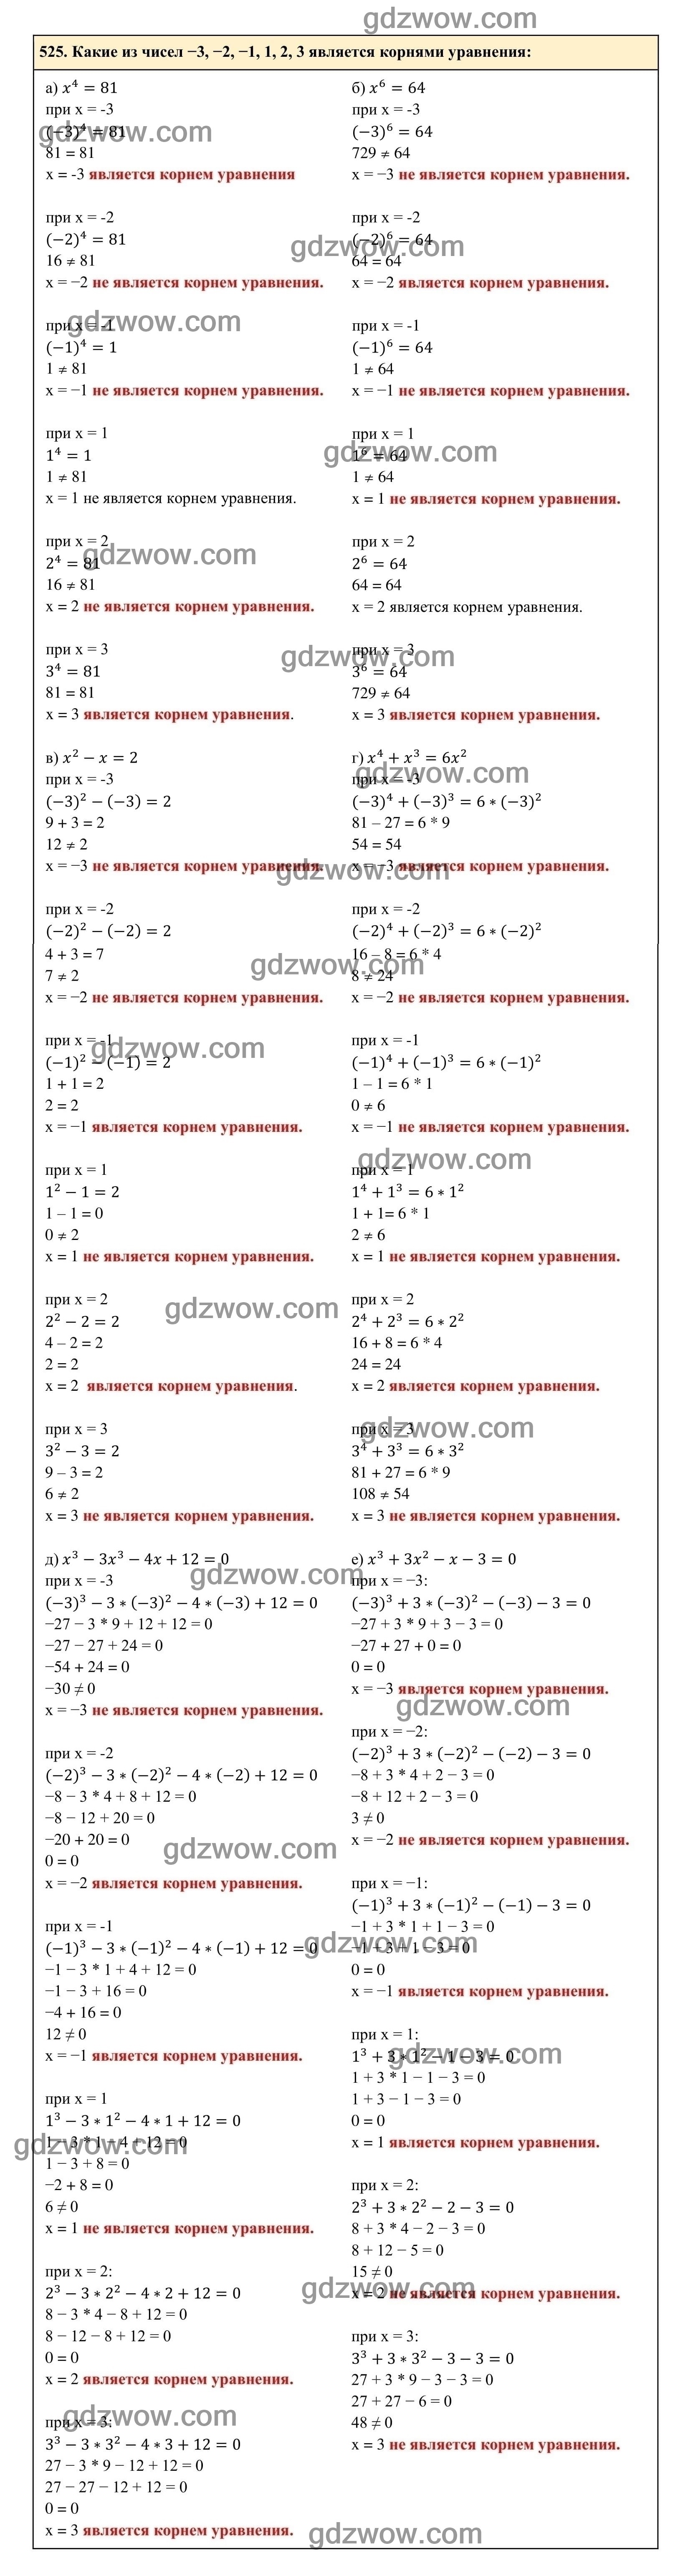 Упражнение 525 - ГДЗ по Алгебре 7 класс Учебник Макарычев (решебник) - GDZwow